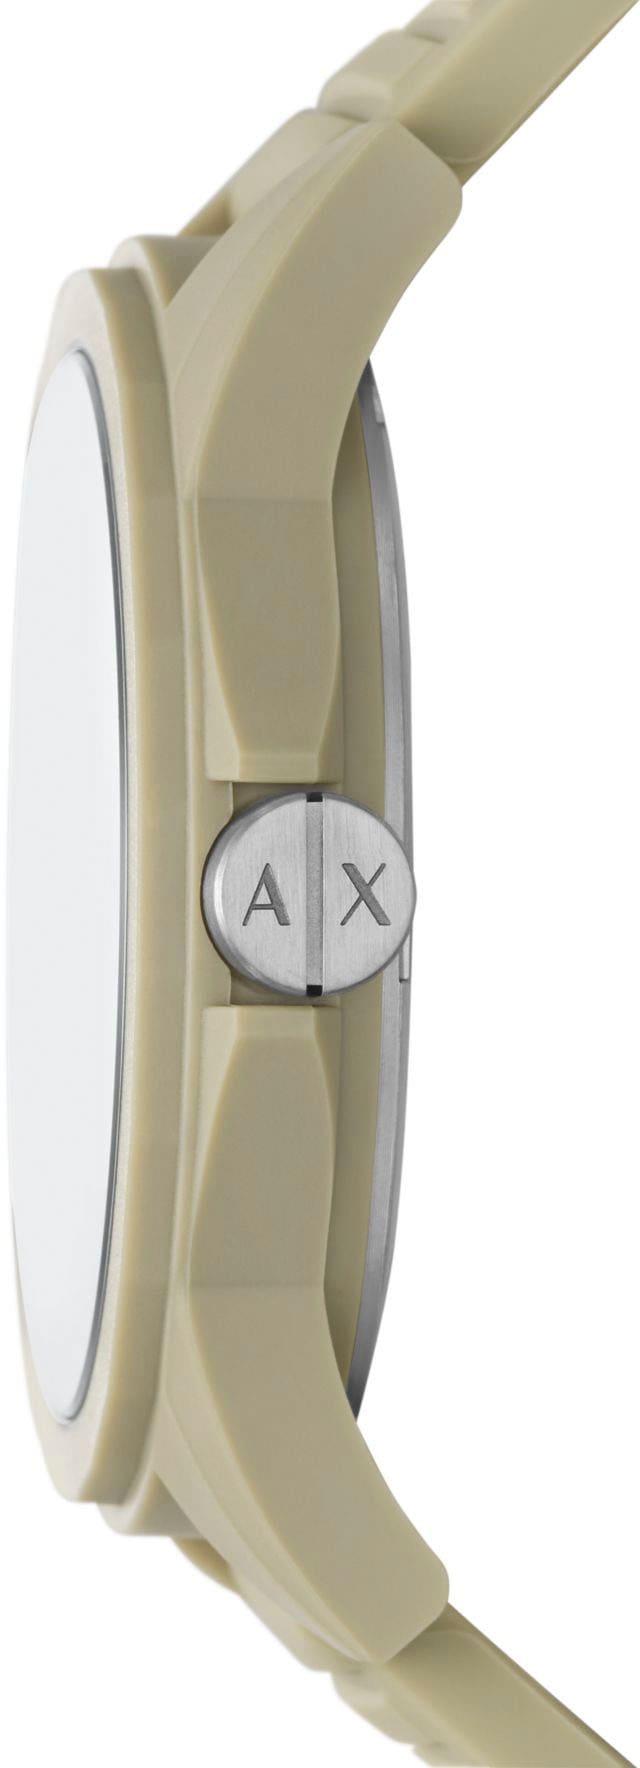 ARMANI EXCHANGE Quarzuhr »AX2528« kaufen | BAUR